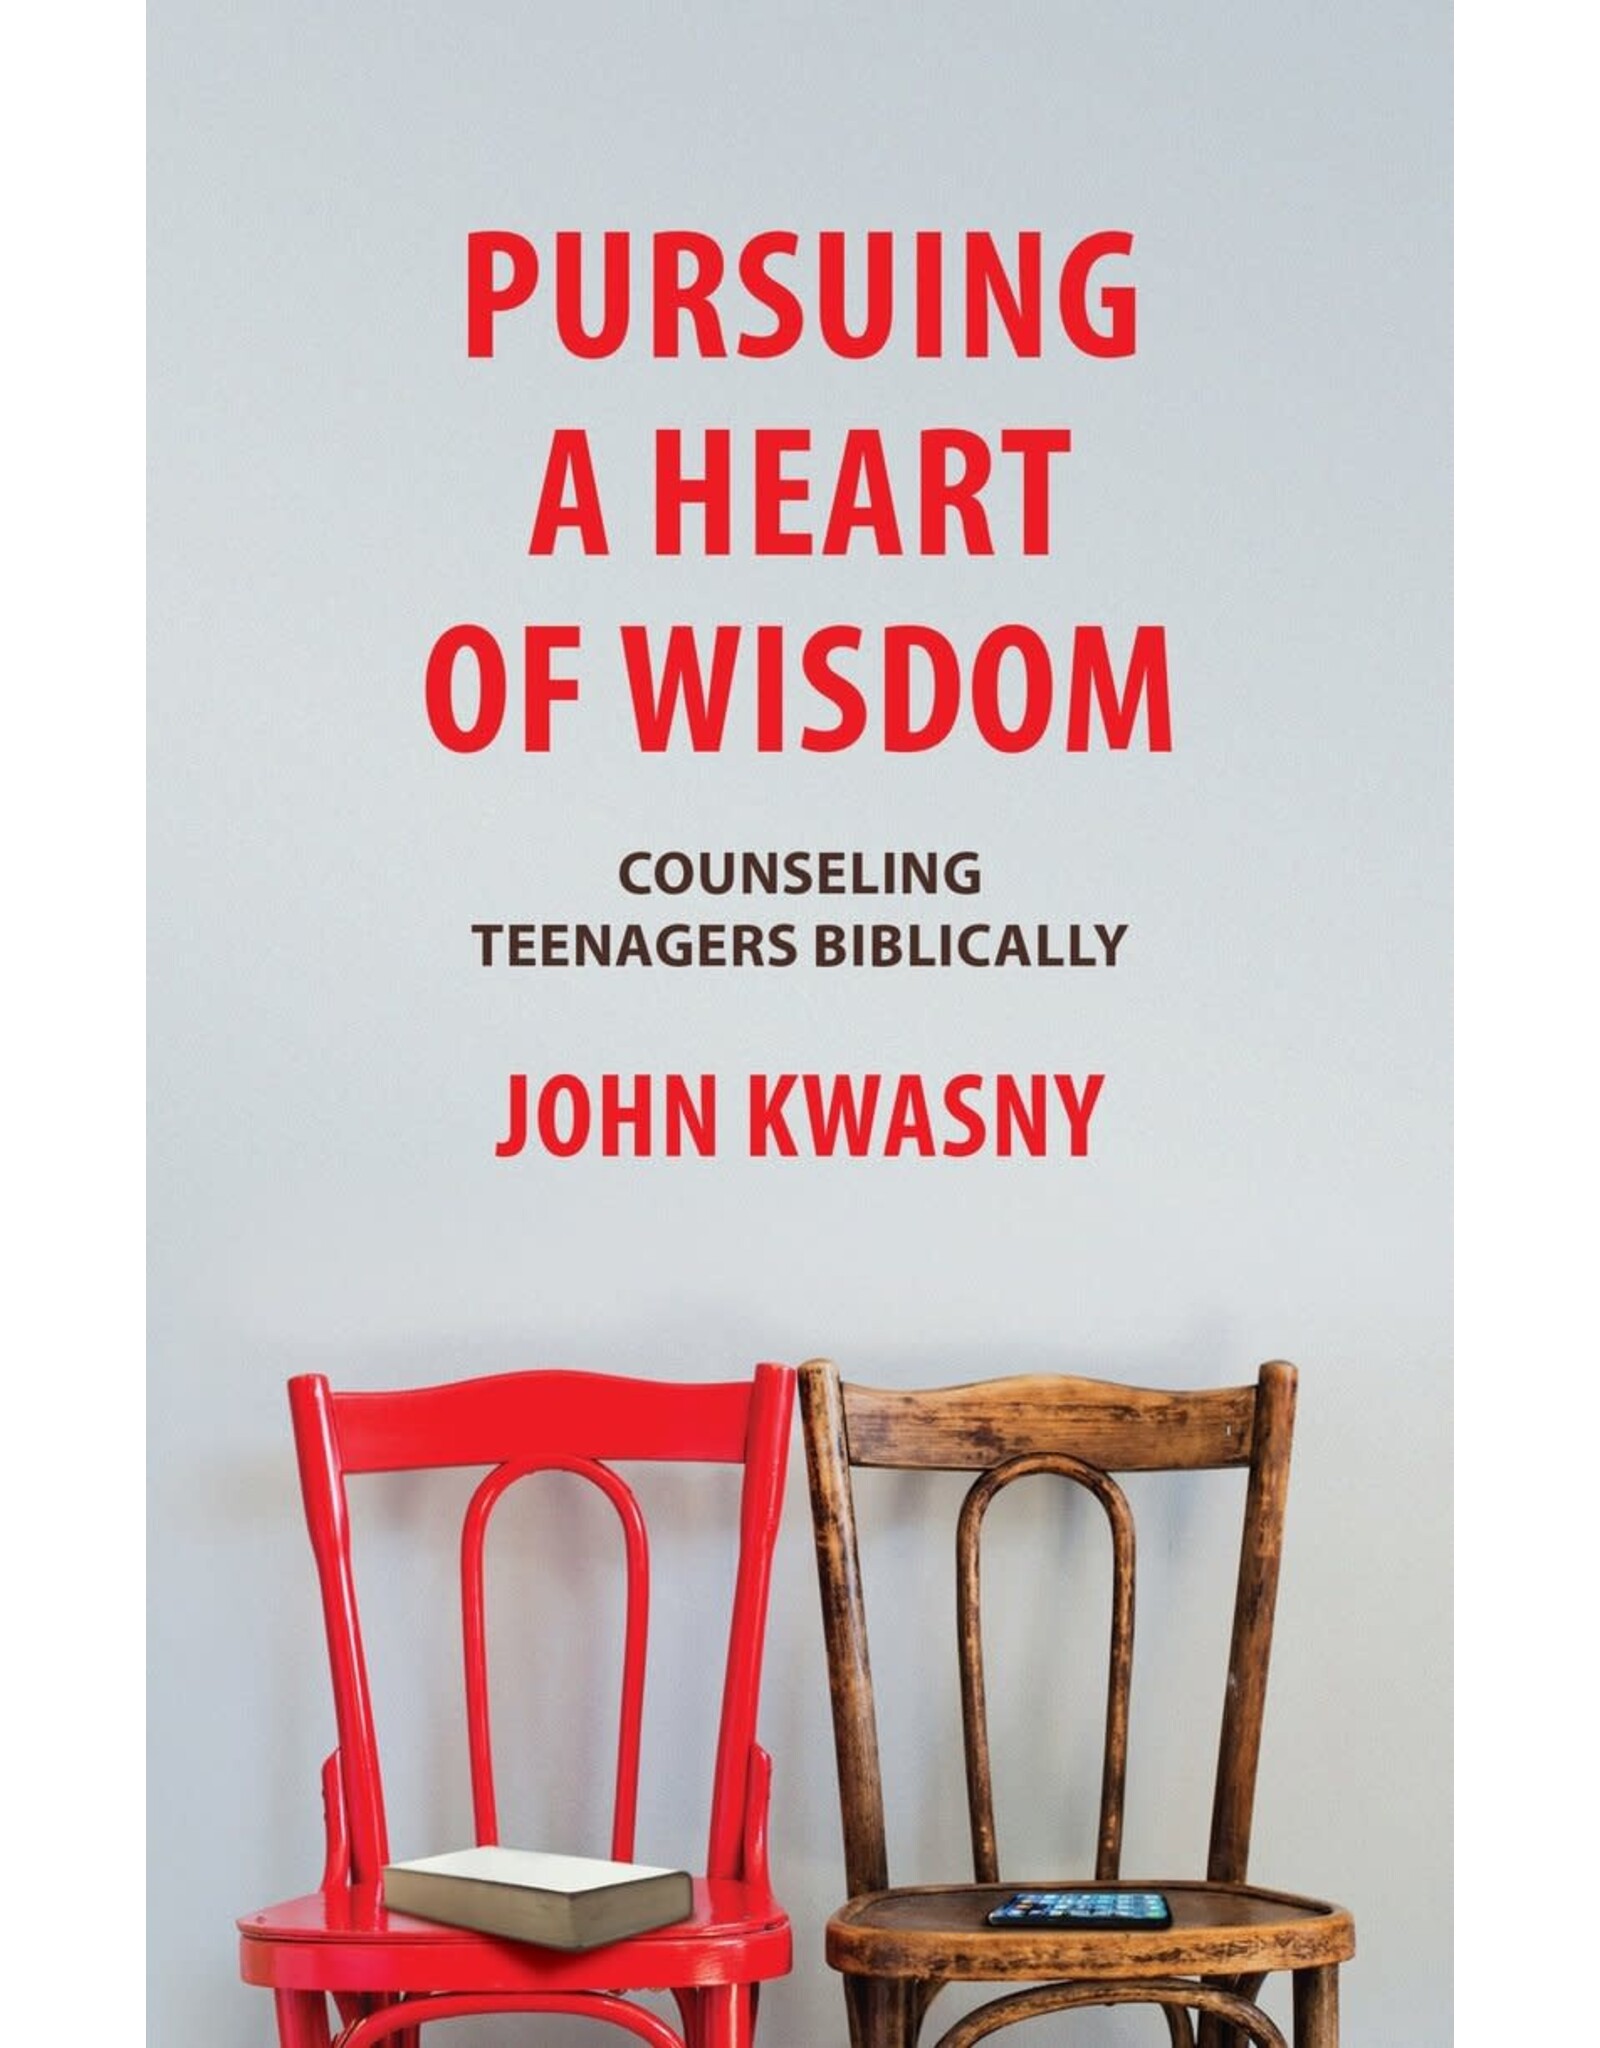 Pursuing a Heart of Wisdom